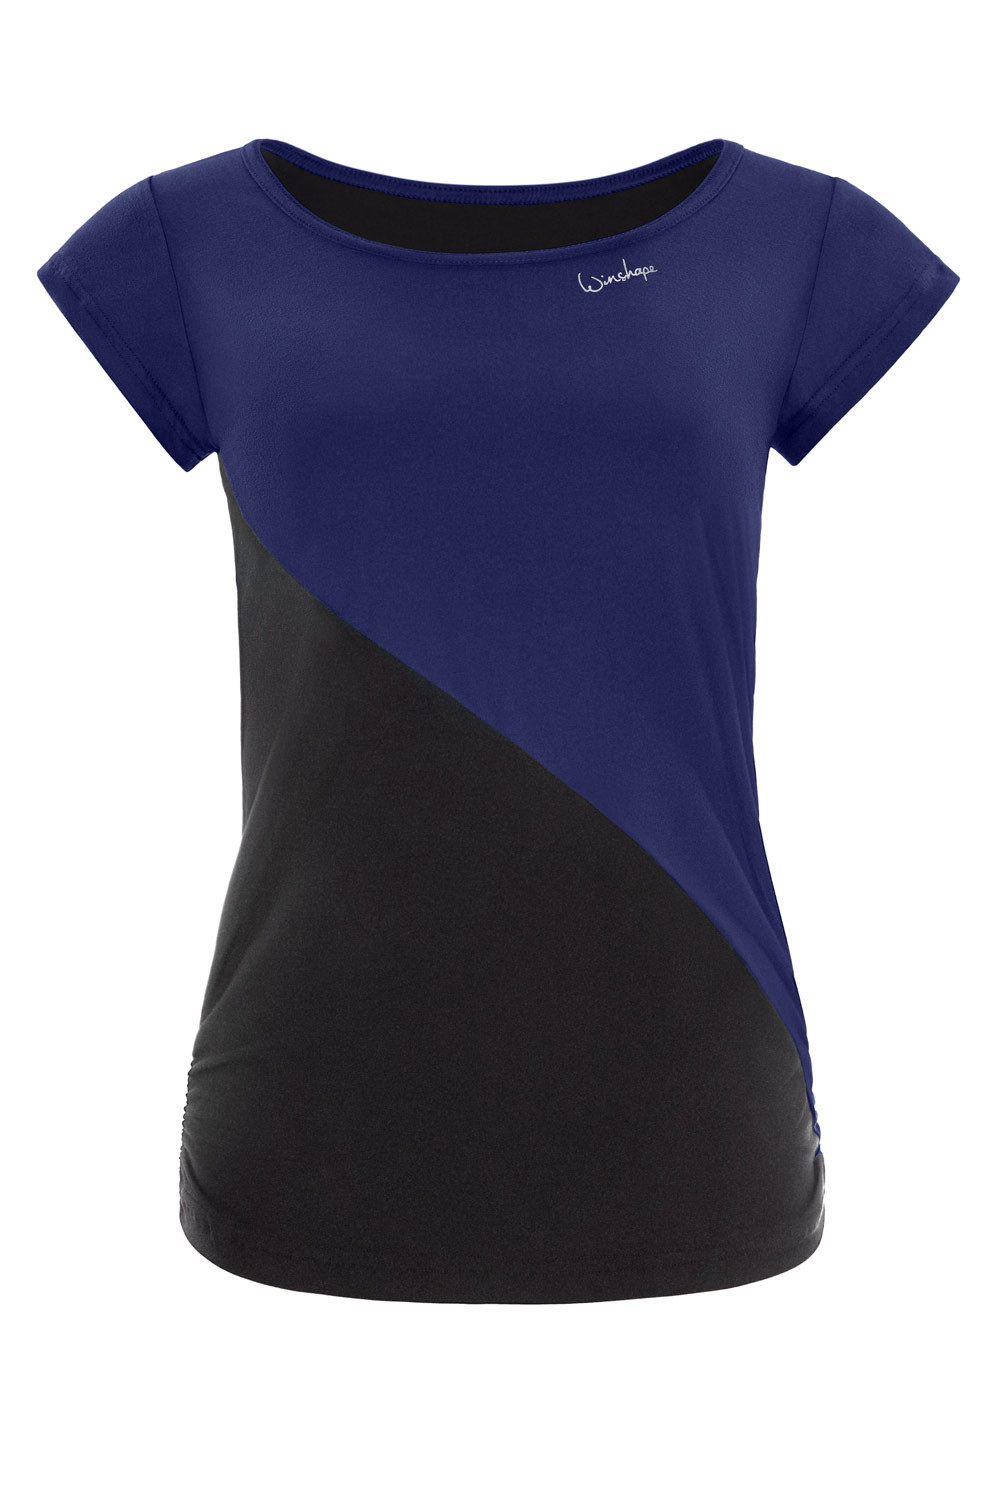 Functional Light and Soft Kurzarmshirt AET109LS, dark blue/schwarz,  Winshape Ultra Soft Style